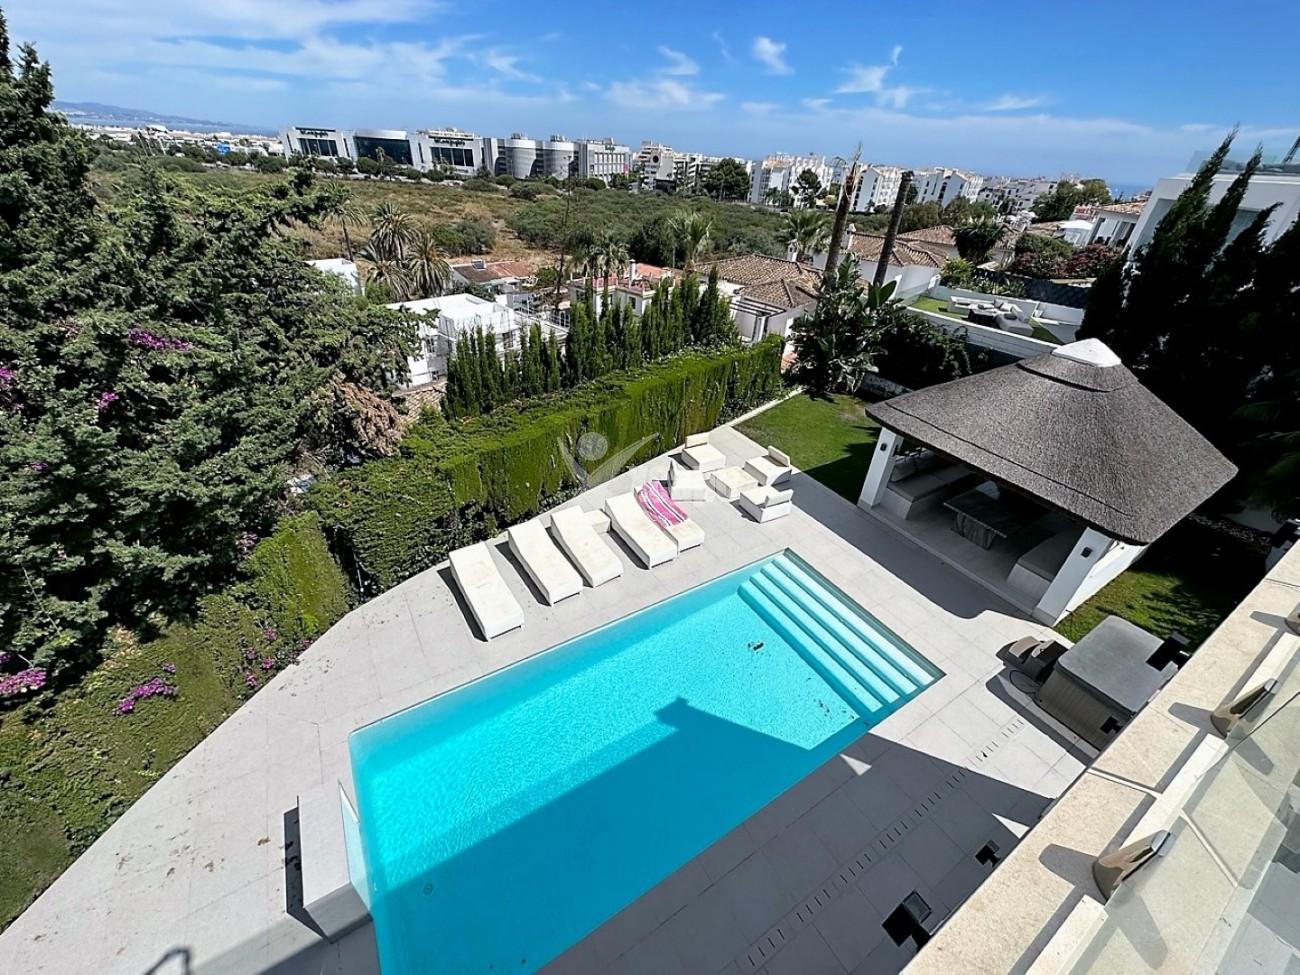 Modern Villa for sale Nueva Andalucia (26)